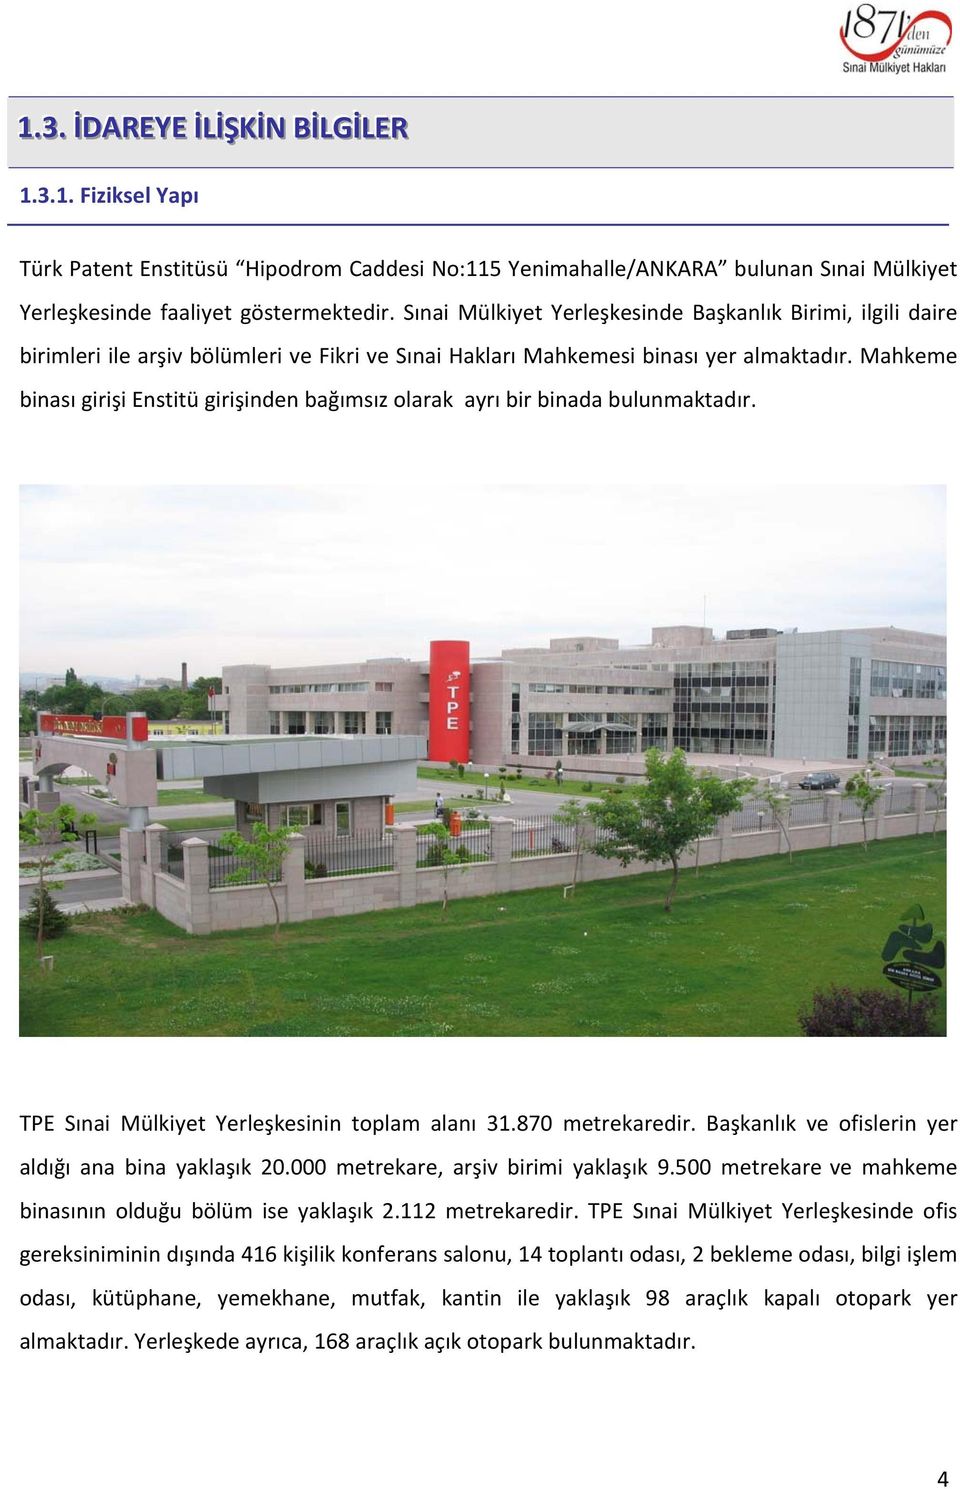 Mahkeme binası girişi Enstitü girişinden bağımsız olarak ayrı bir binada bulunmaktadır. TPE Sınai Mülkiyet Yerleşkesinin toplam alanı 31.870 metrekaredir.